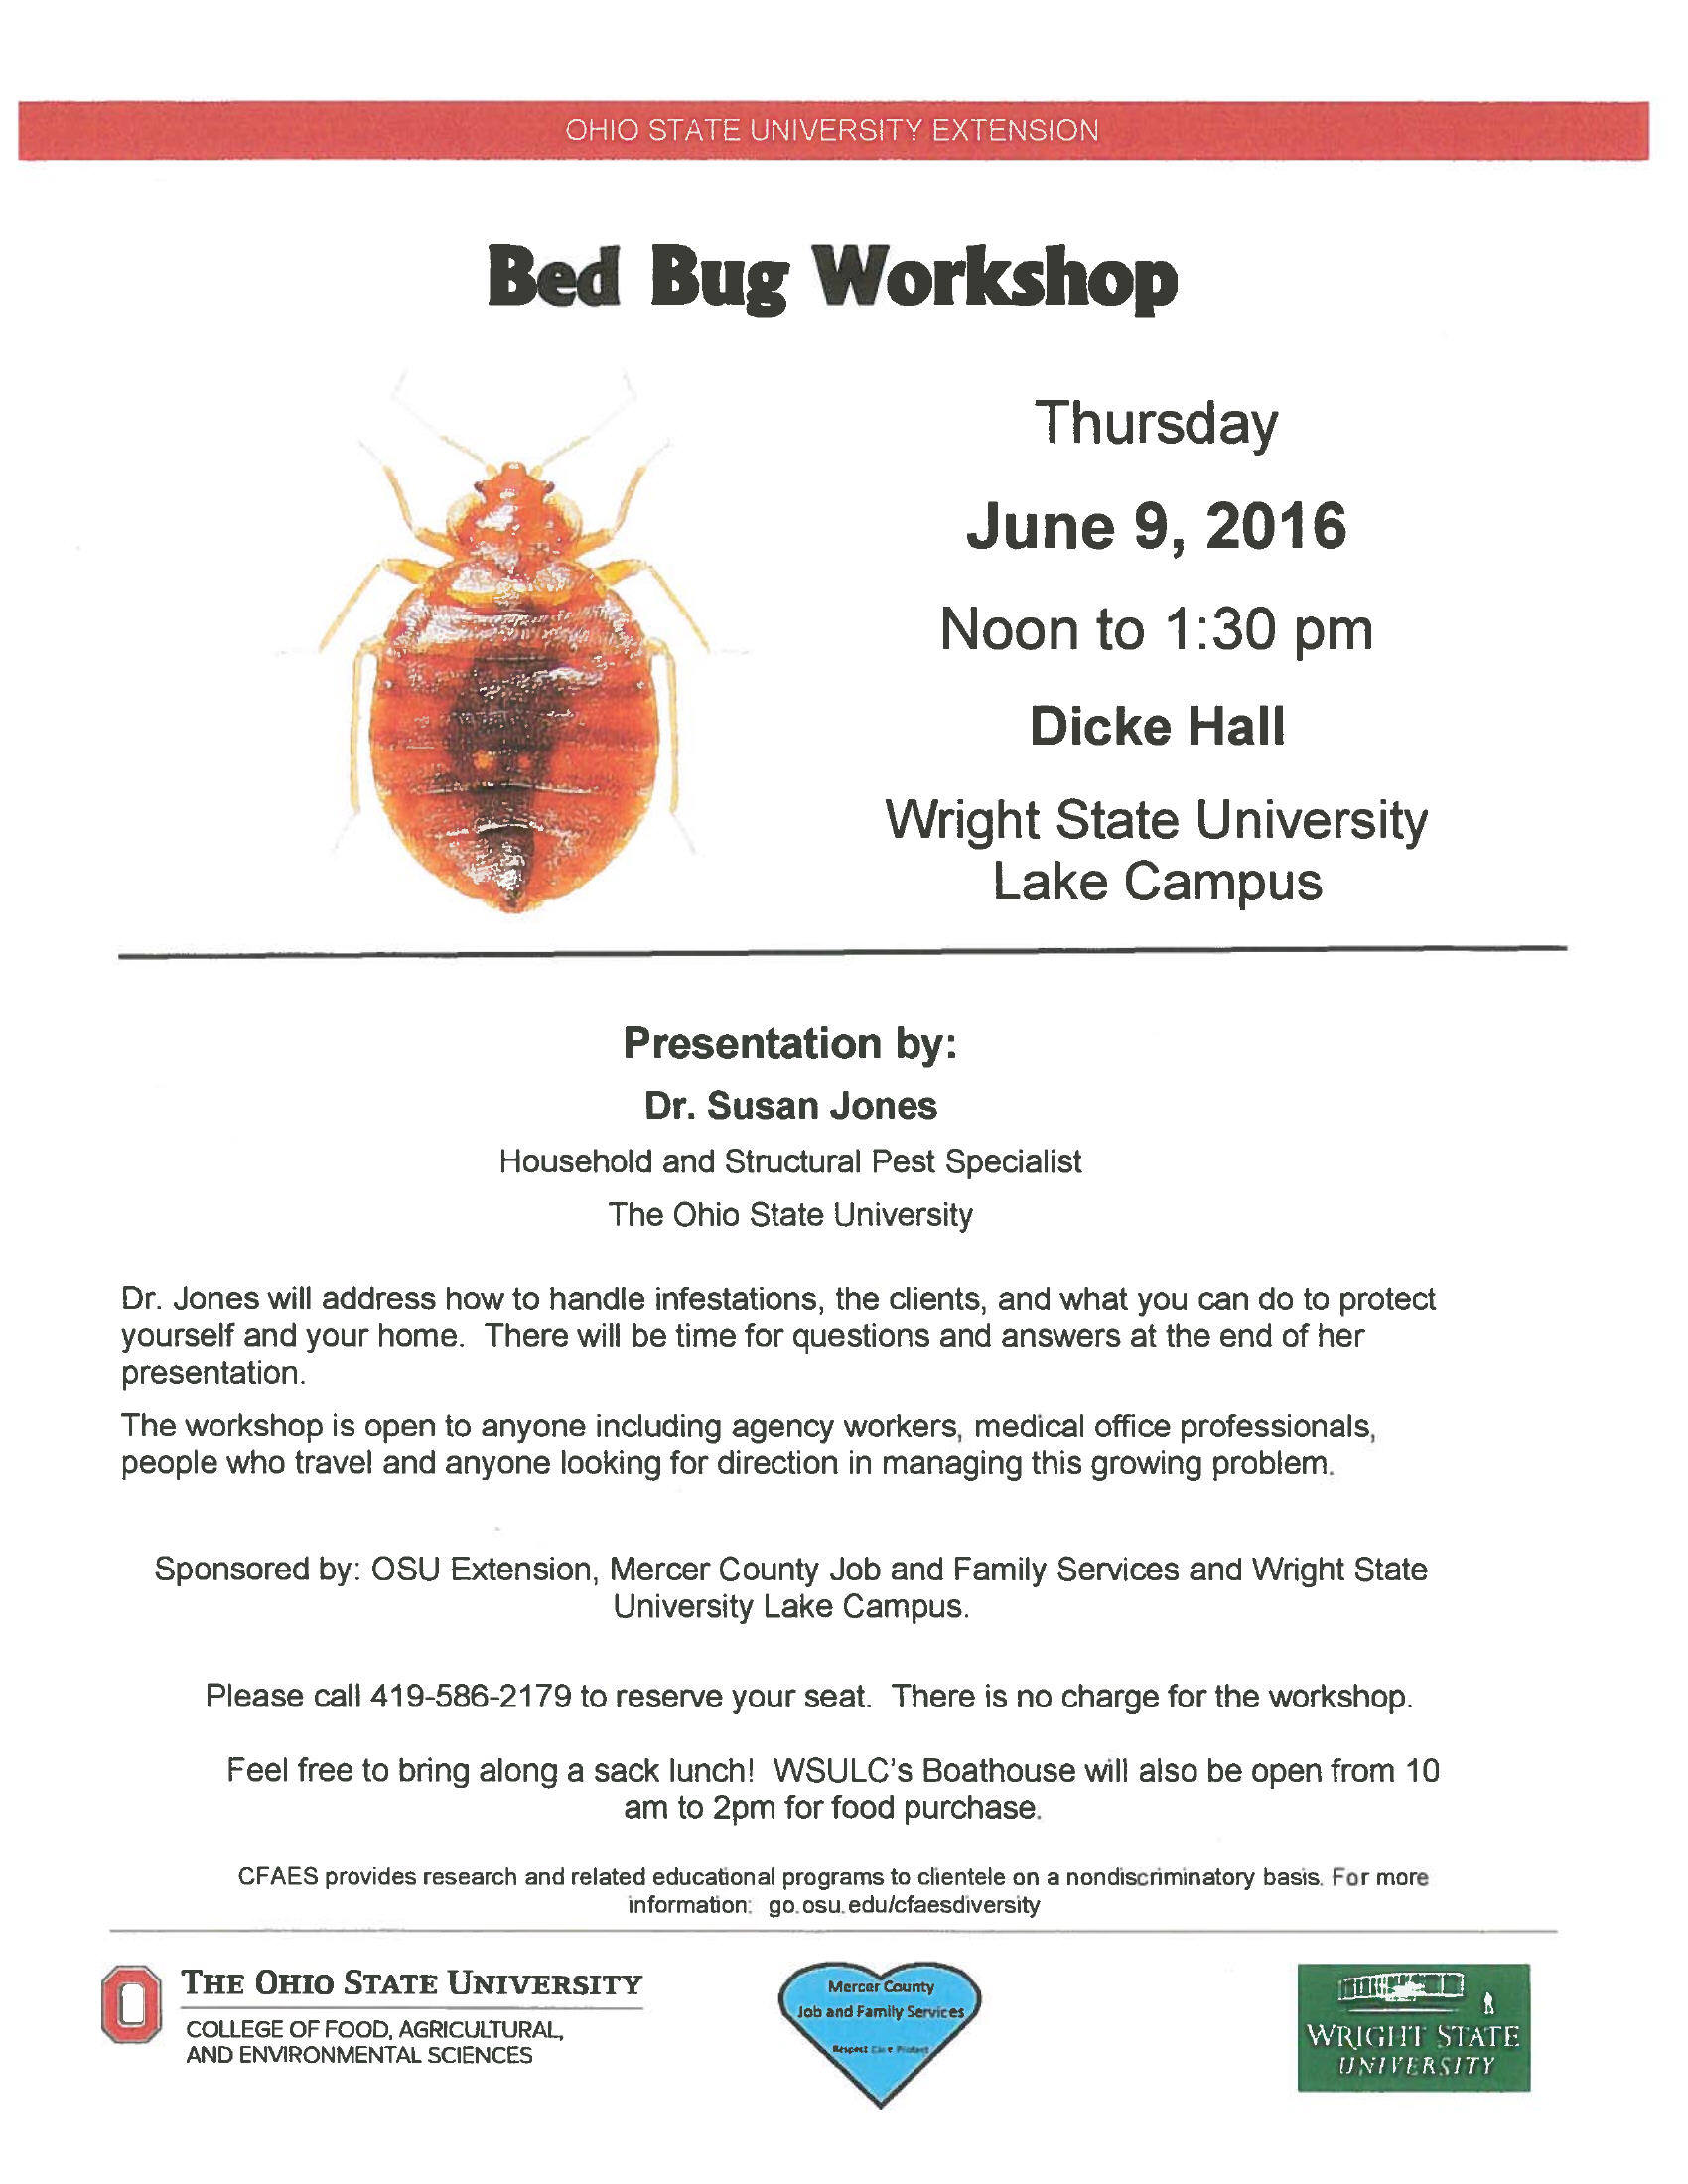 Bed Bug Presentation Flier 6.9.16.jpg